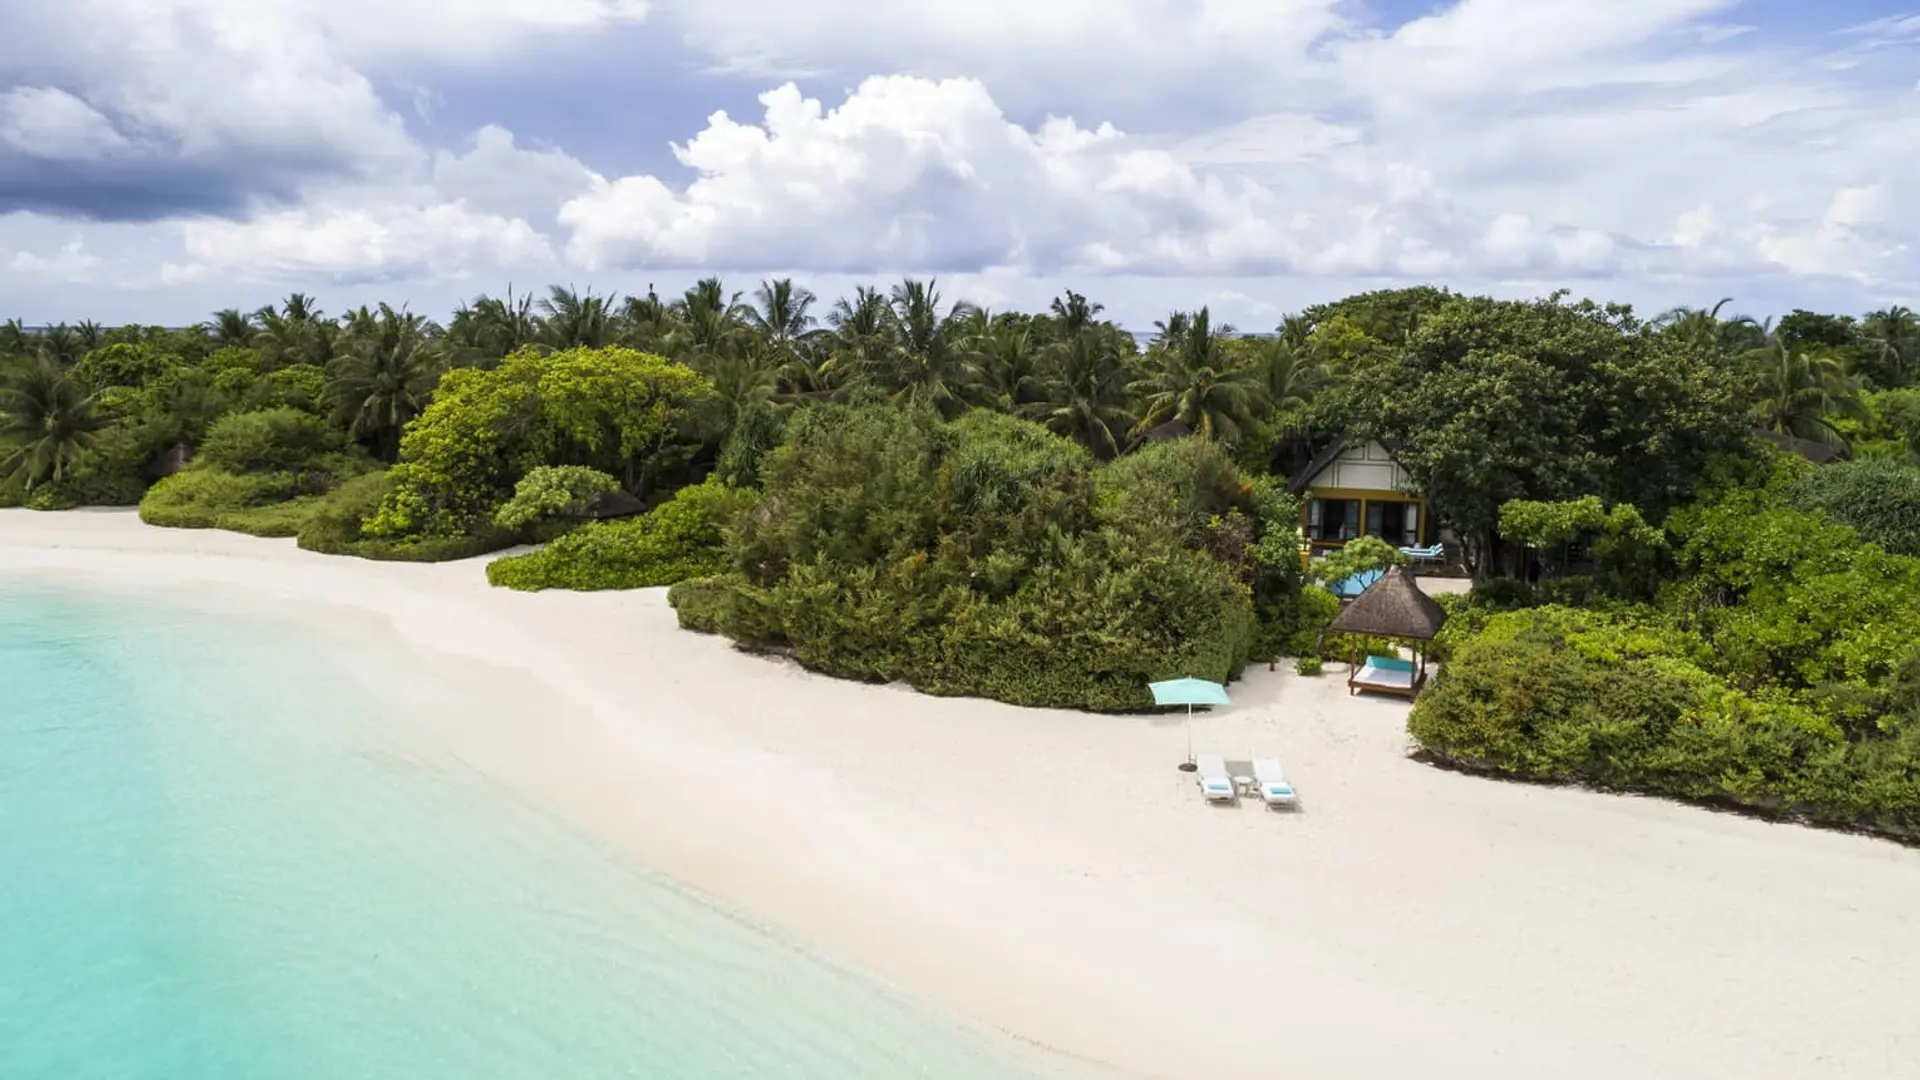 Hotel review Service & Facilities' - Four Seasons Resort Maldives at Landaa Giraavaru - 0